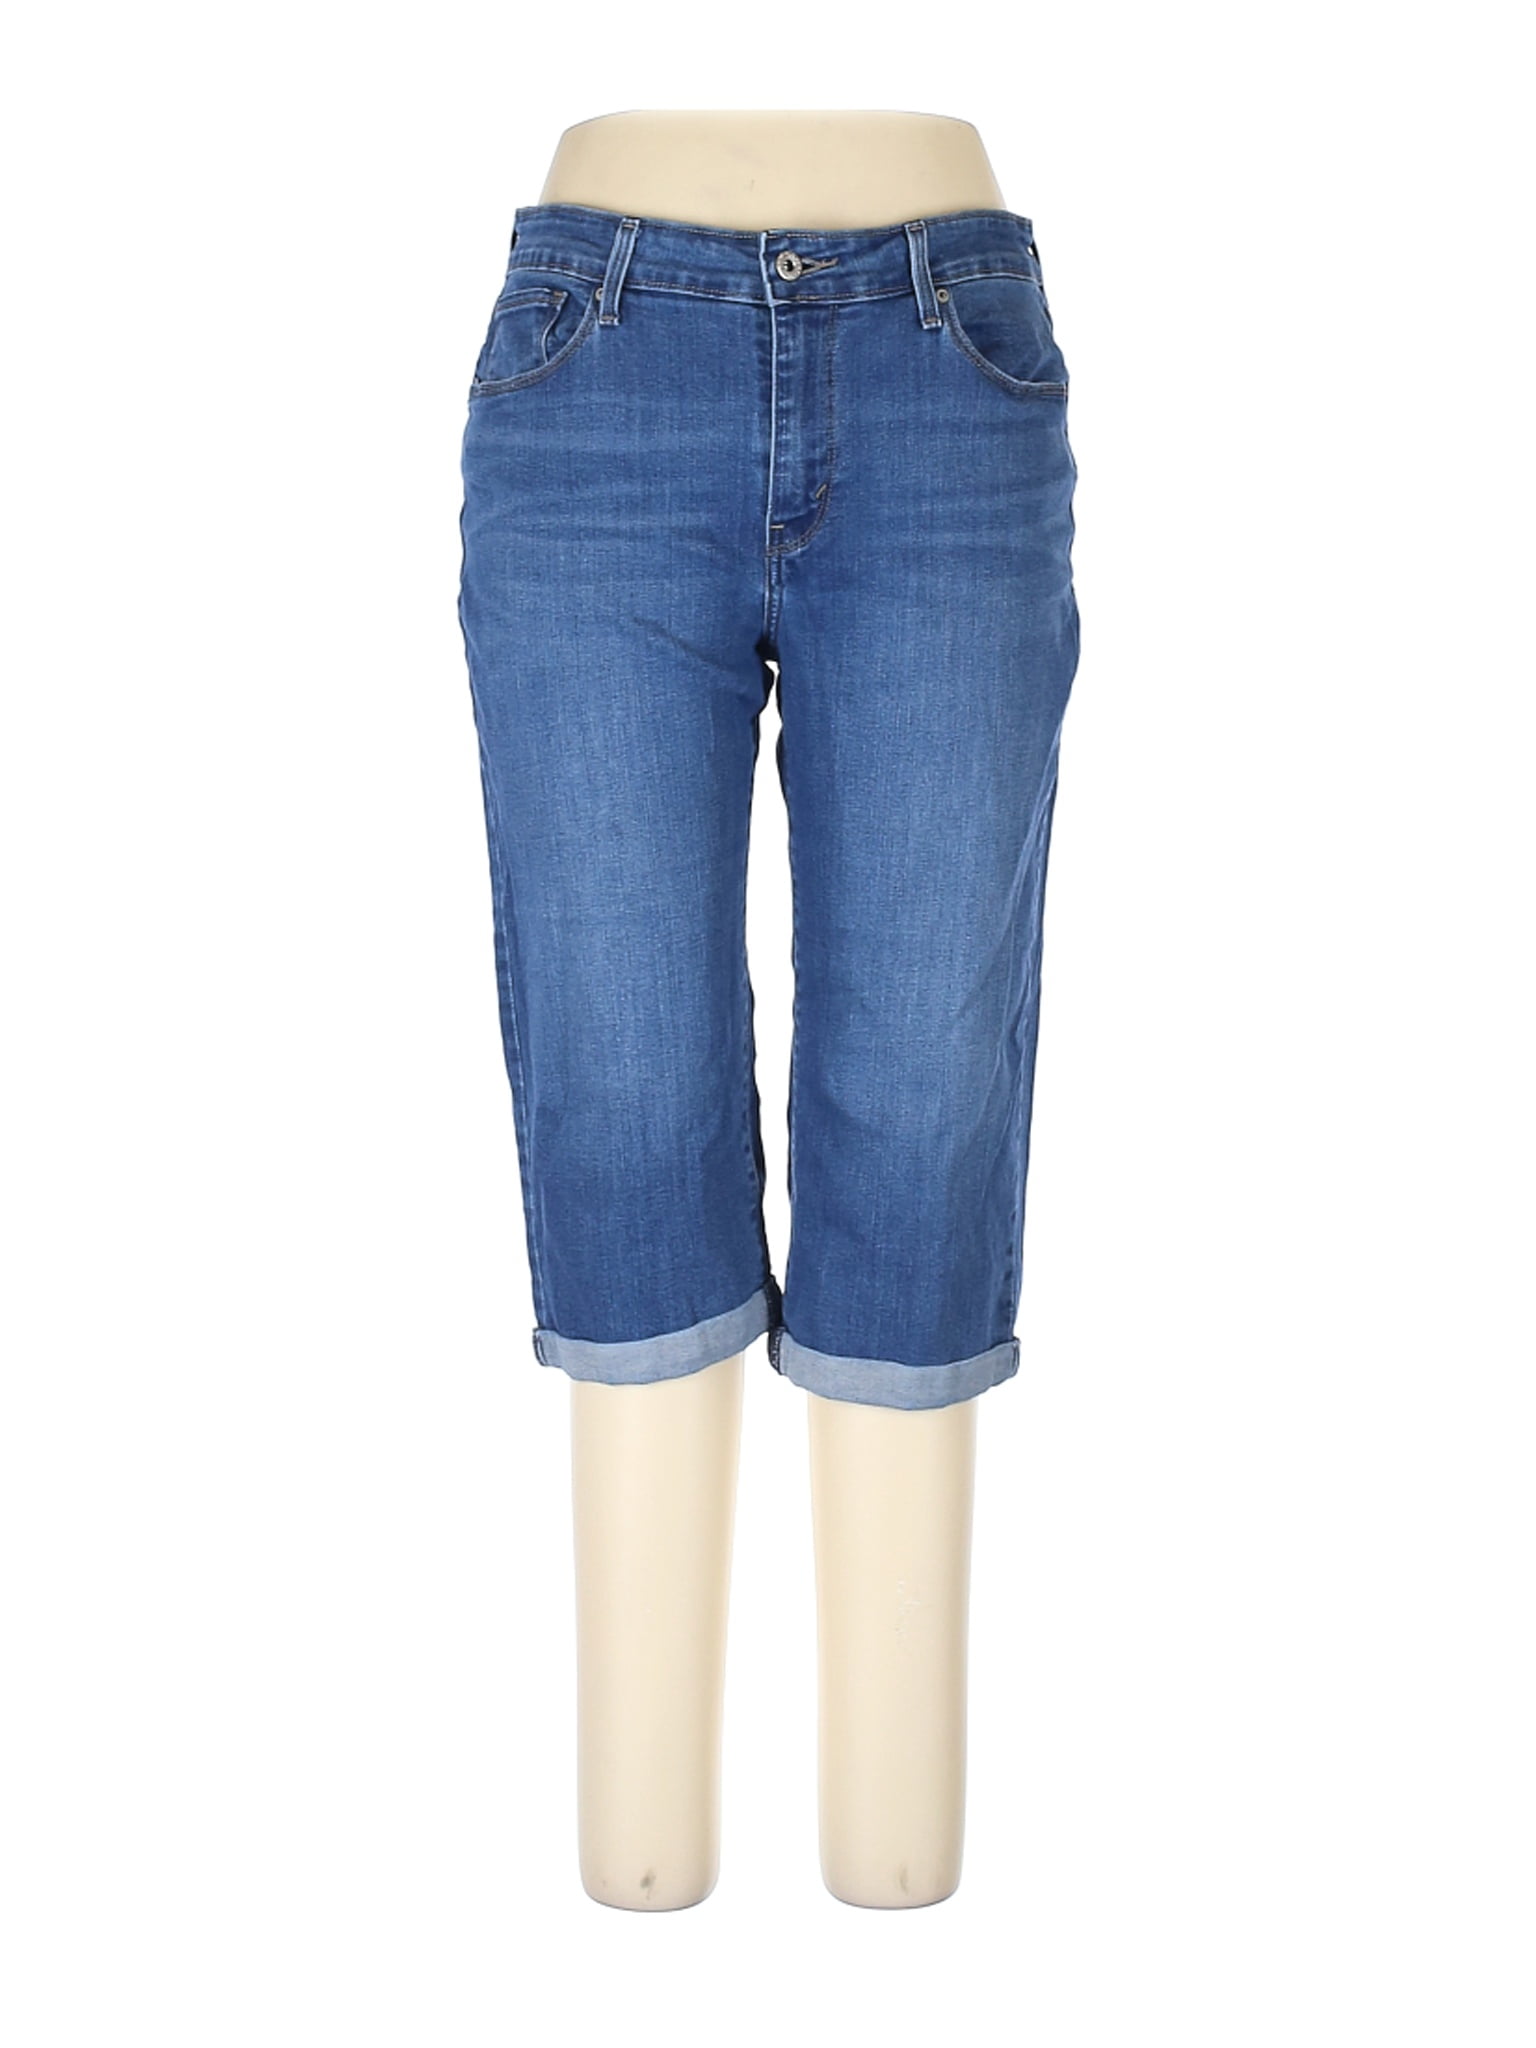 size 14 in women's levi jeans